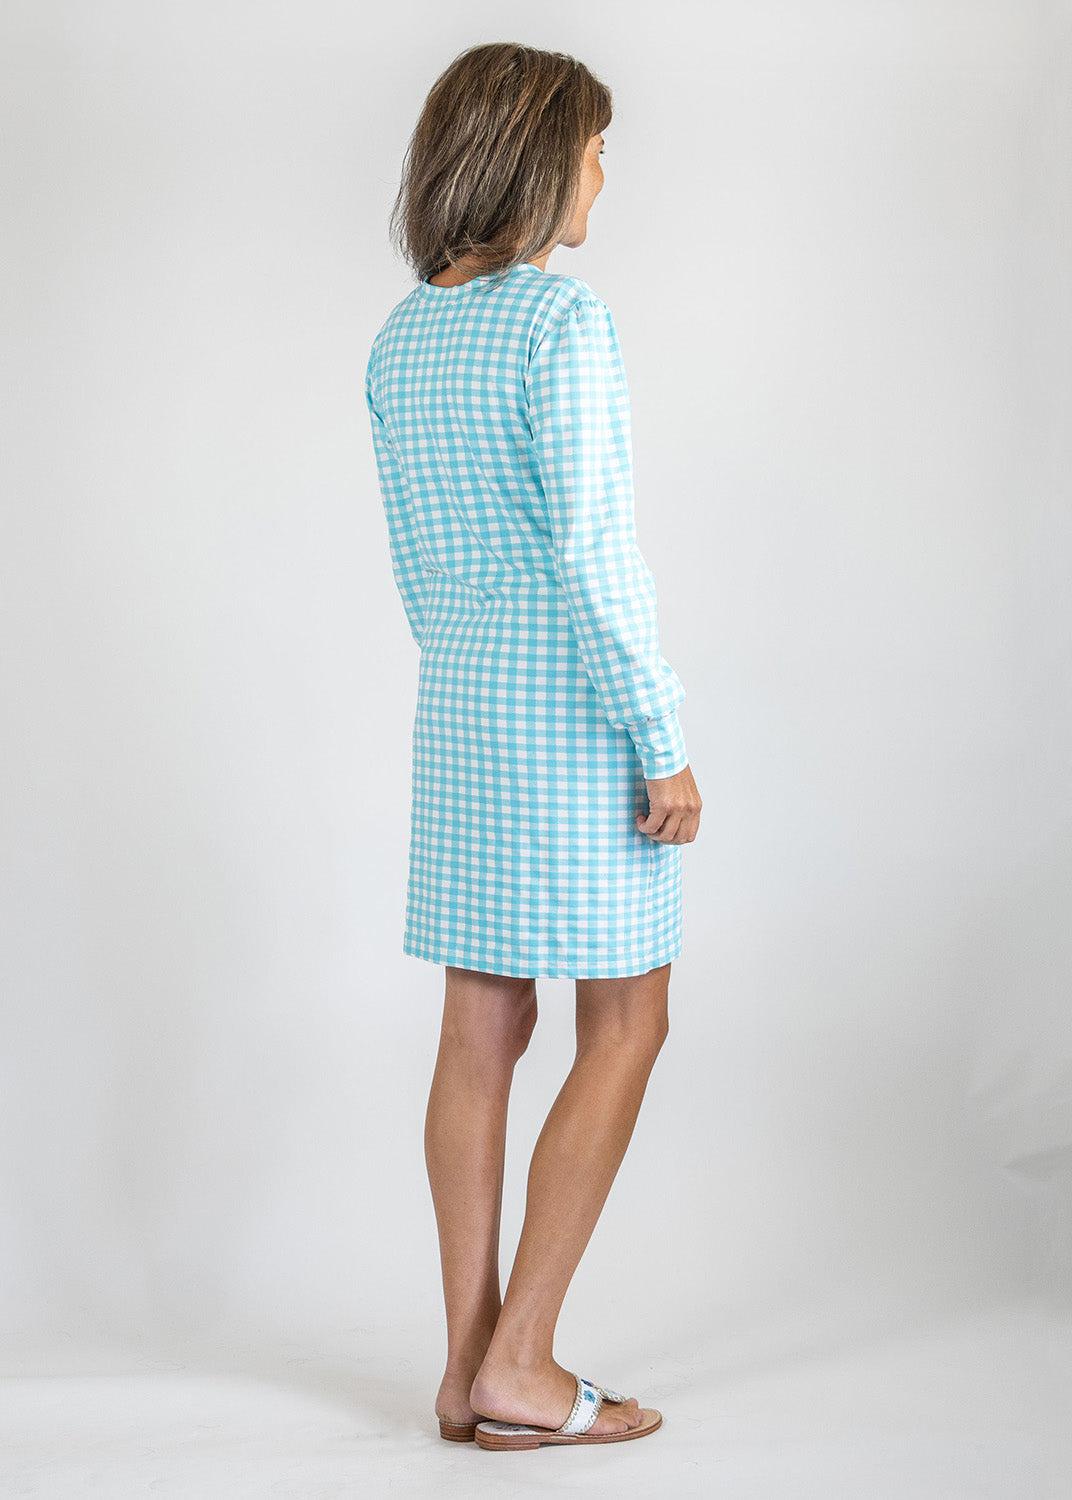 Sydney Dress- Gingham Blue Radiance – sailor-sailor Clothing